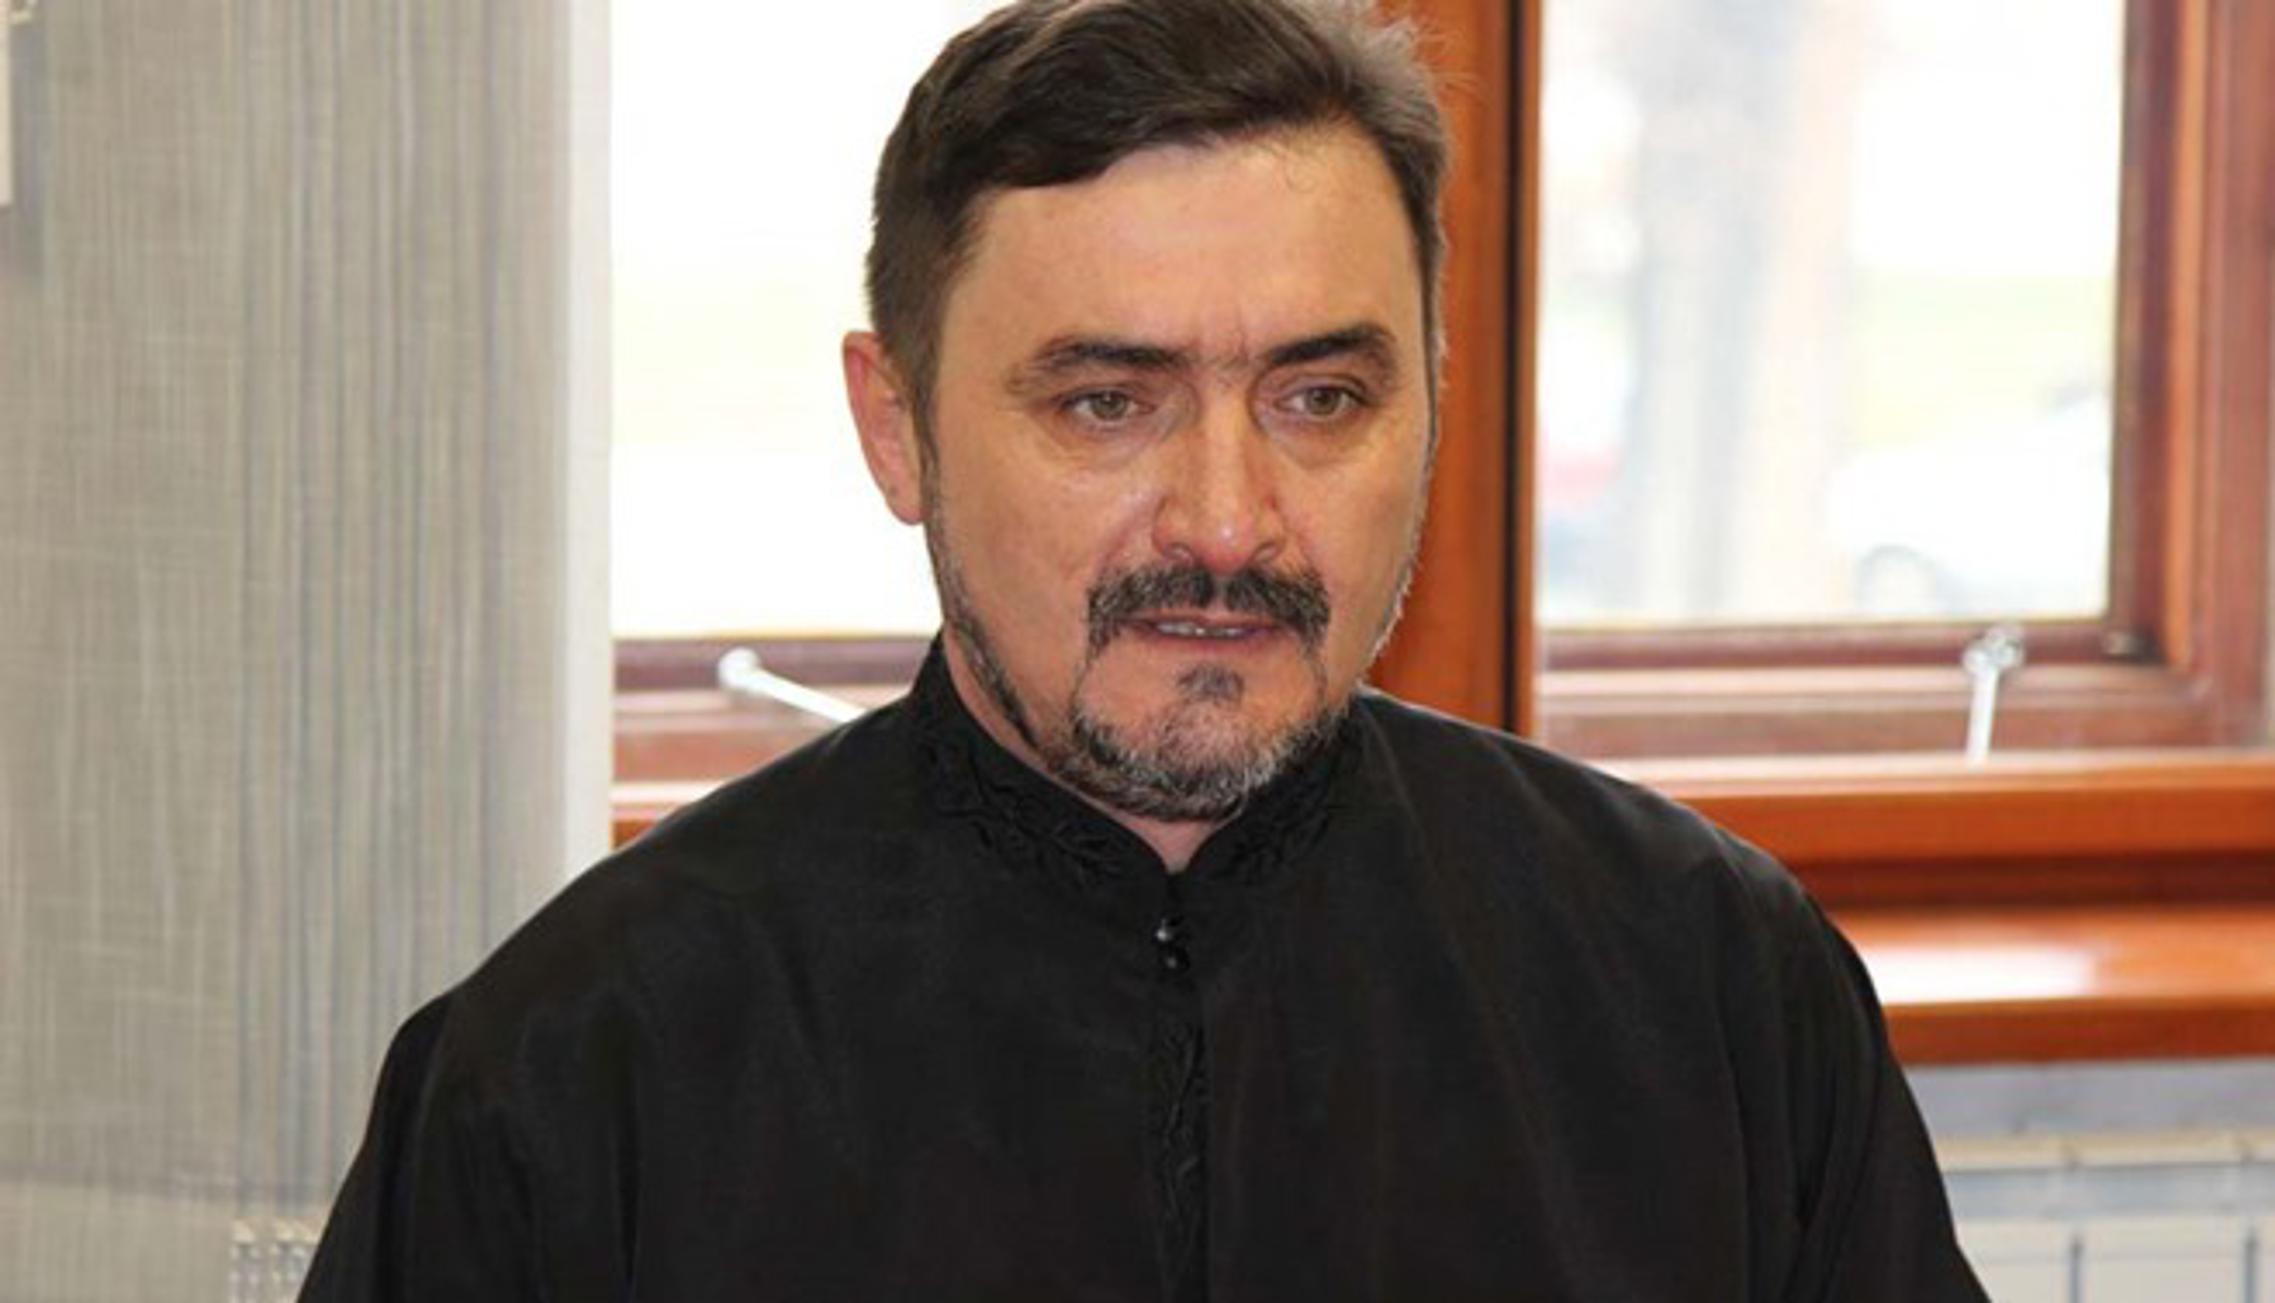 Paroh Ratko Gatarević